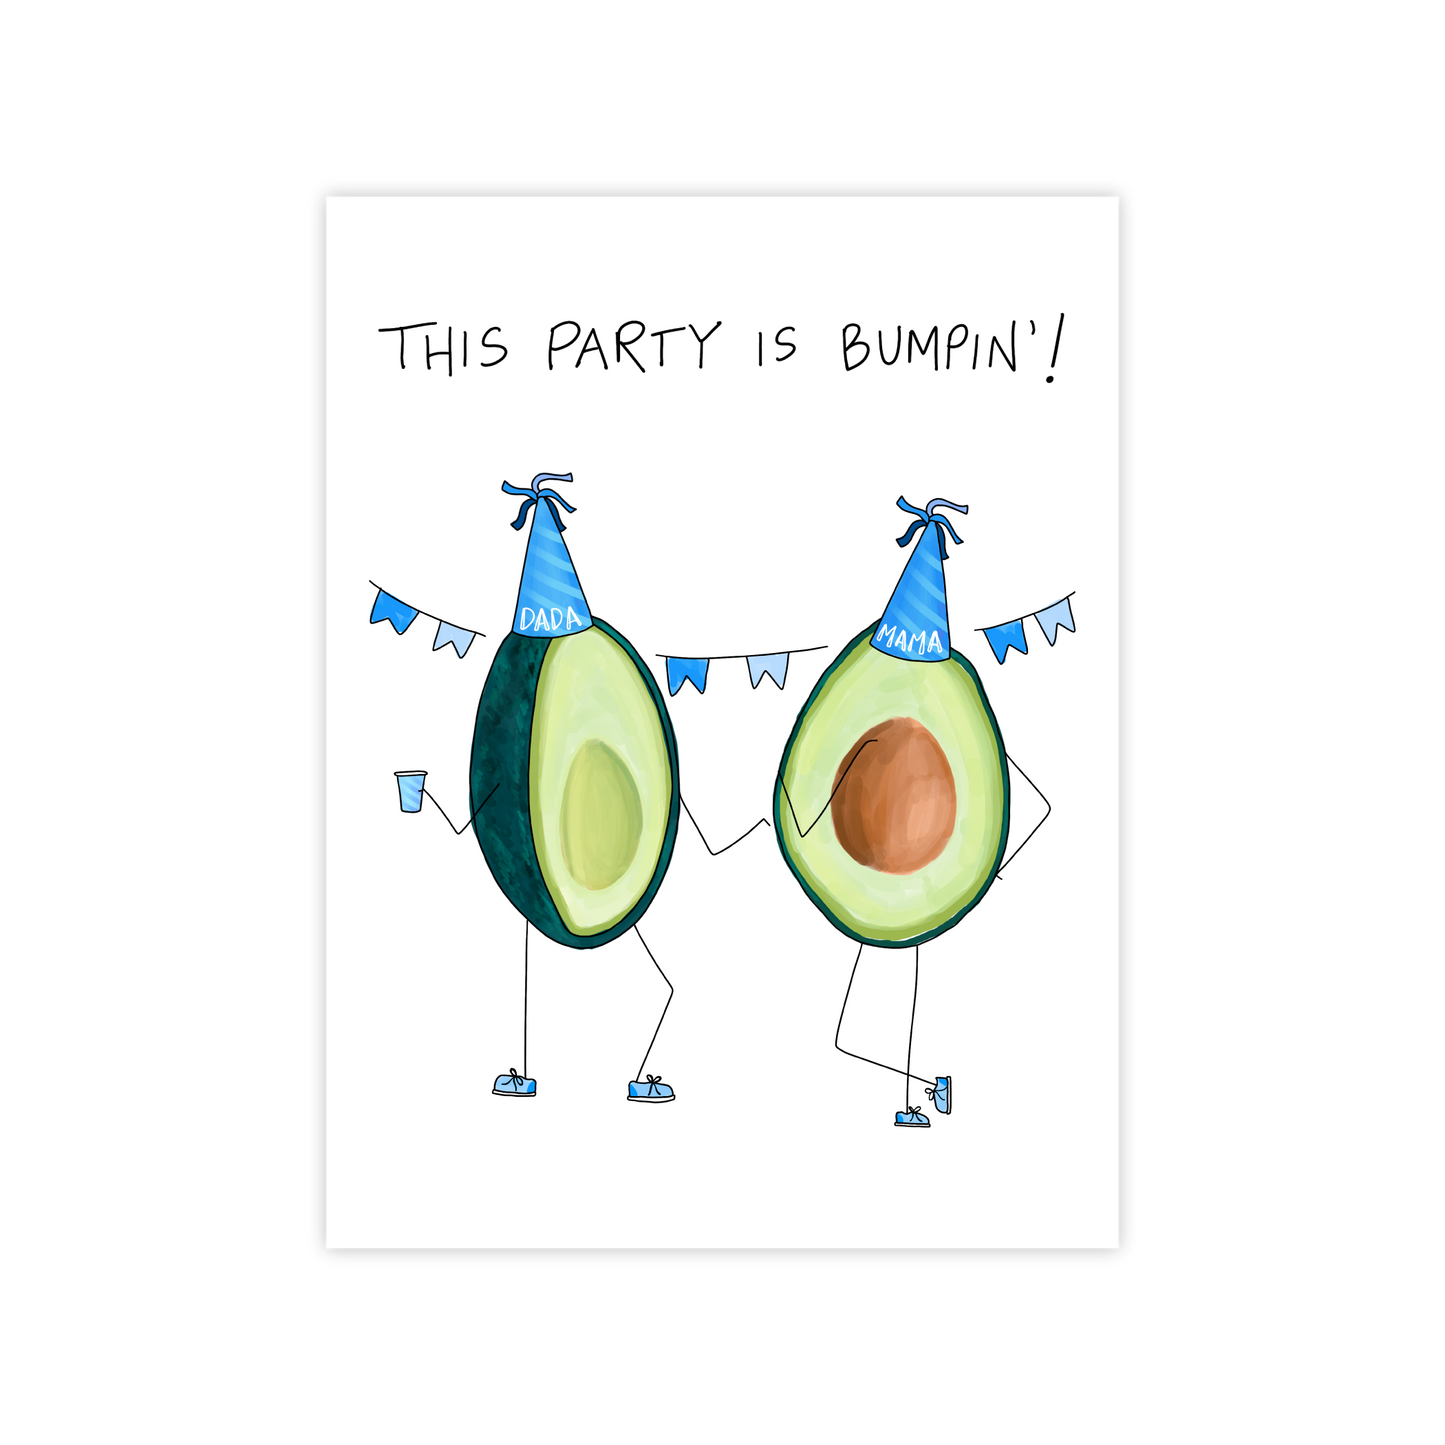 A Bumpin' Party